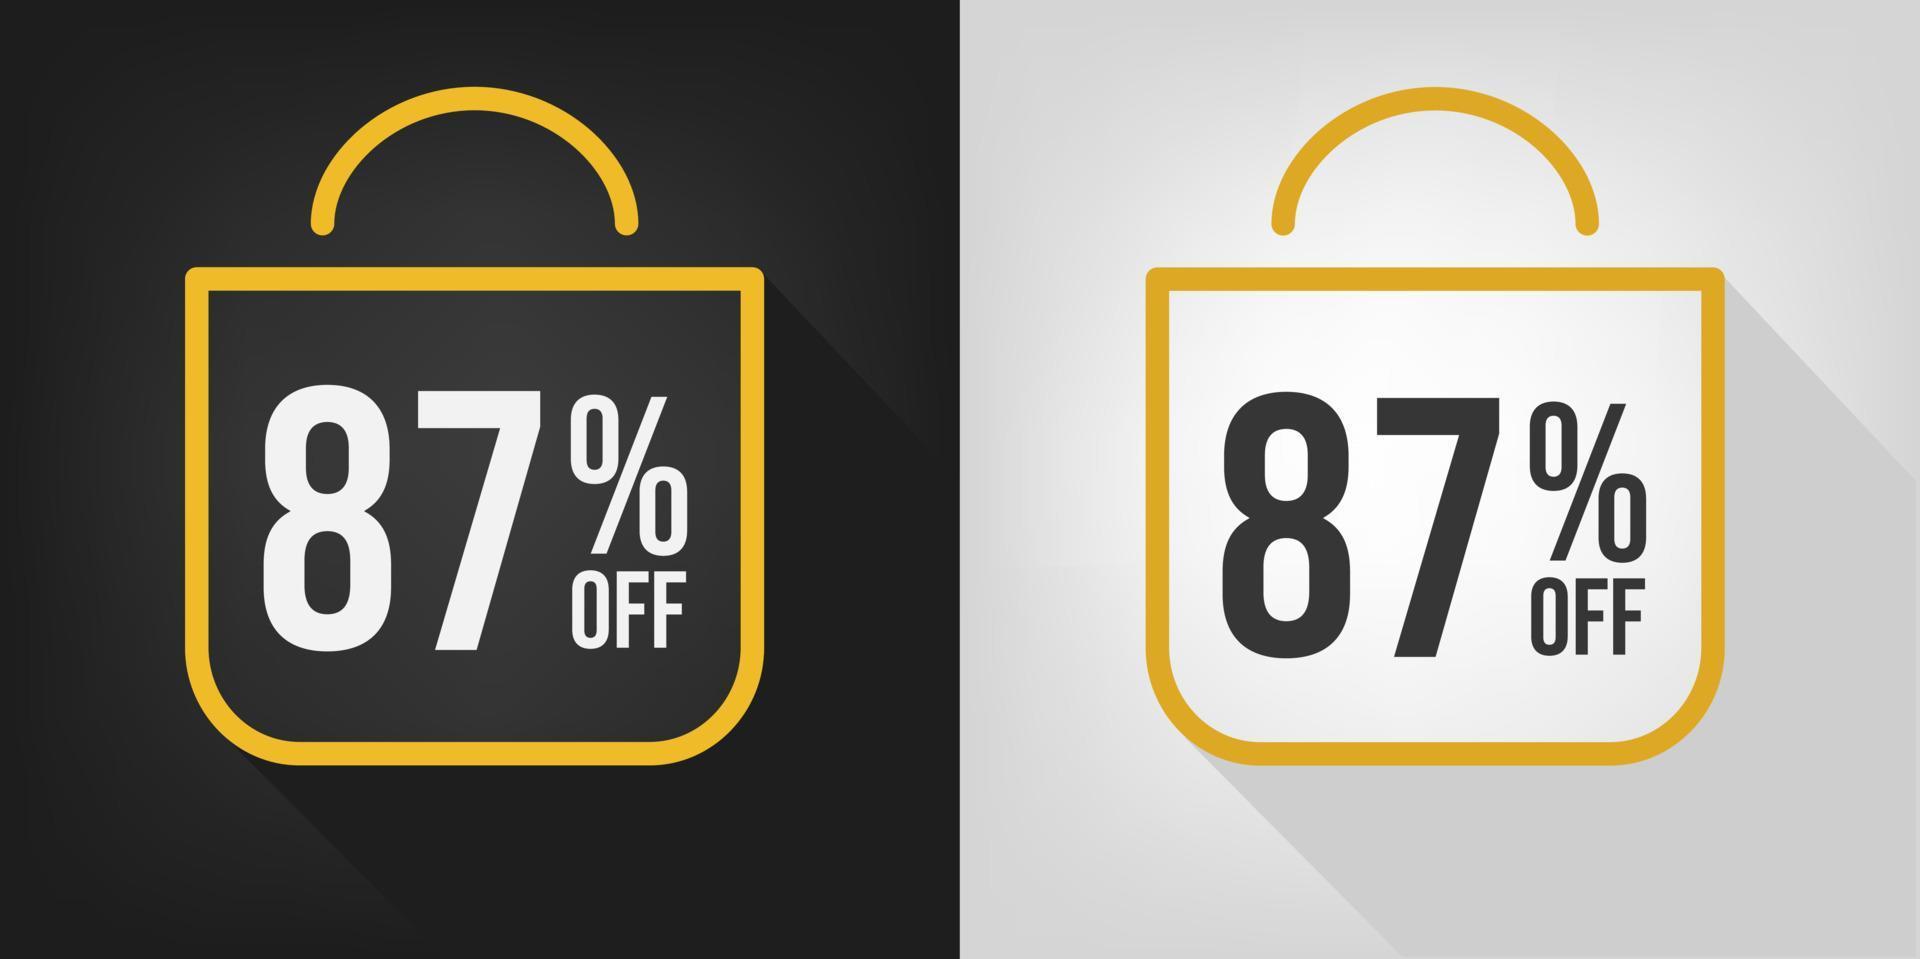 88 por ciento de descuento. pancarta negra, blanca y amarilla con un descuento del ochenta y ocho por ciento. vector de concepto de bolsa de compras.